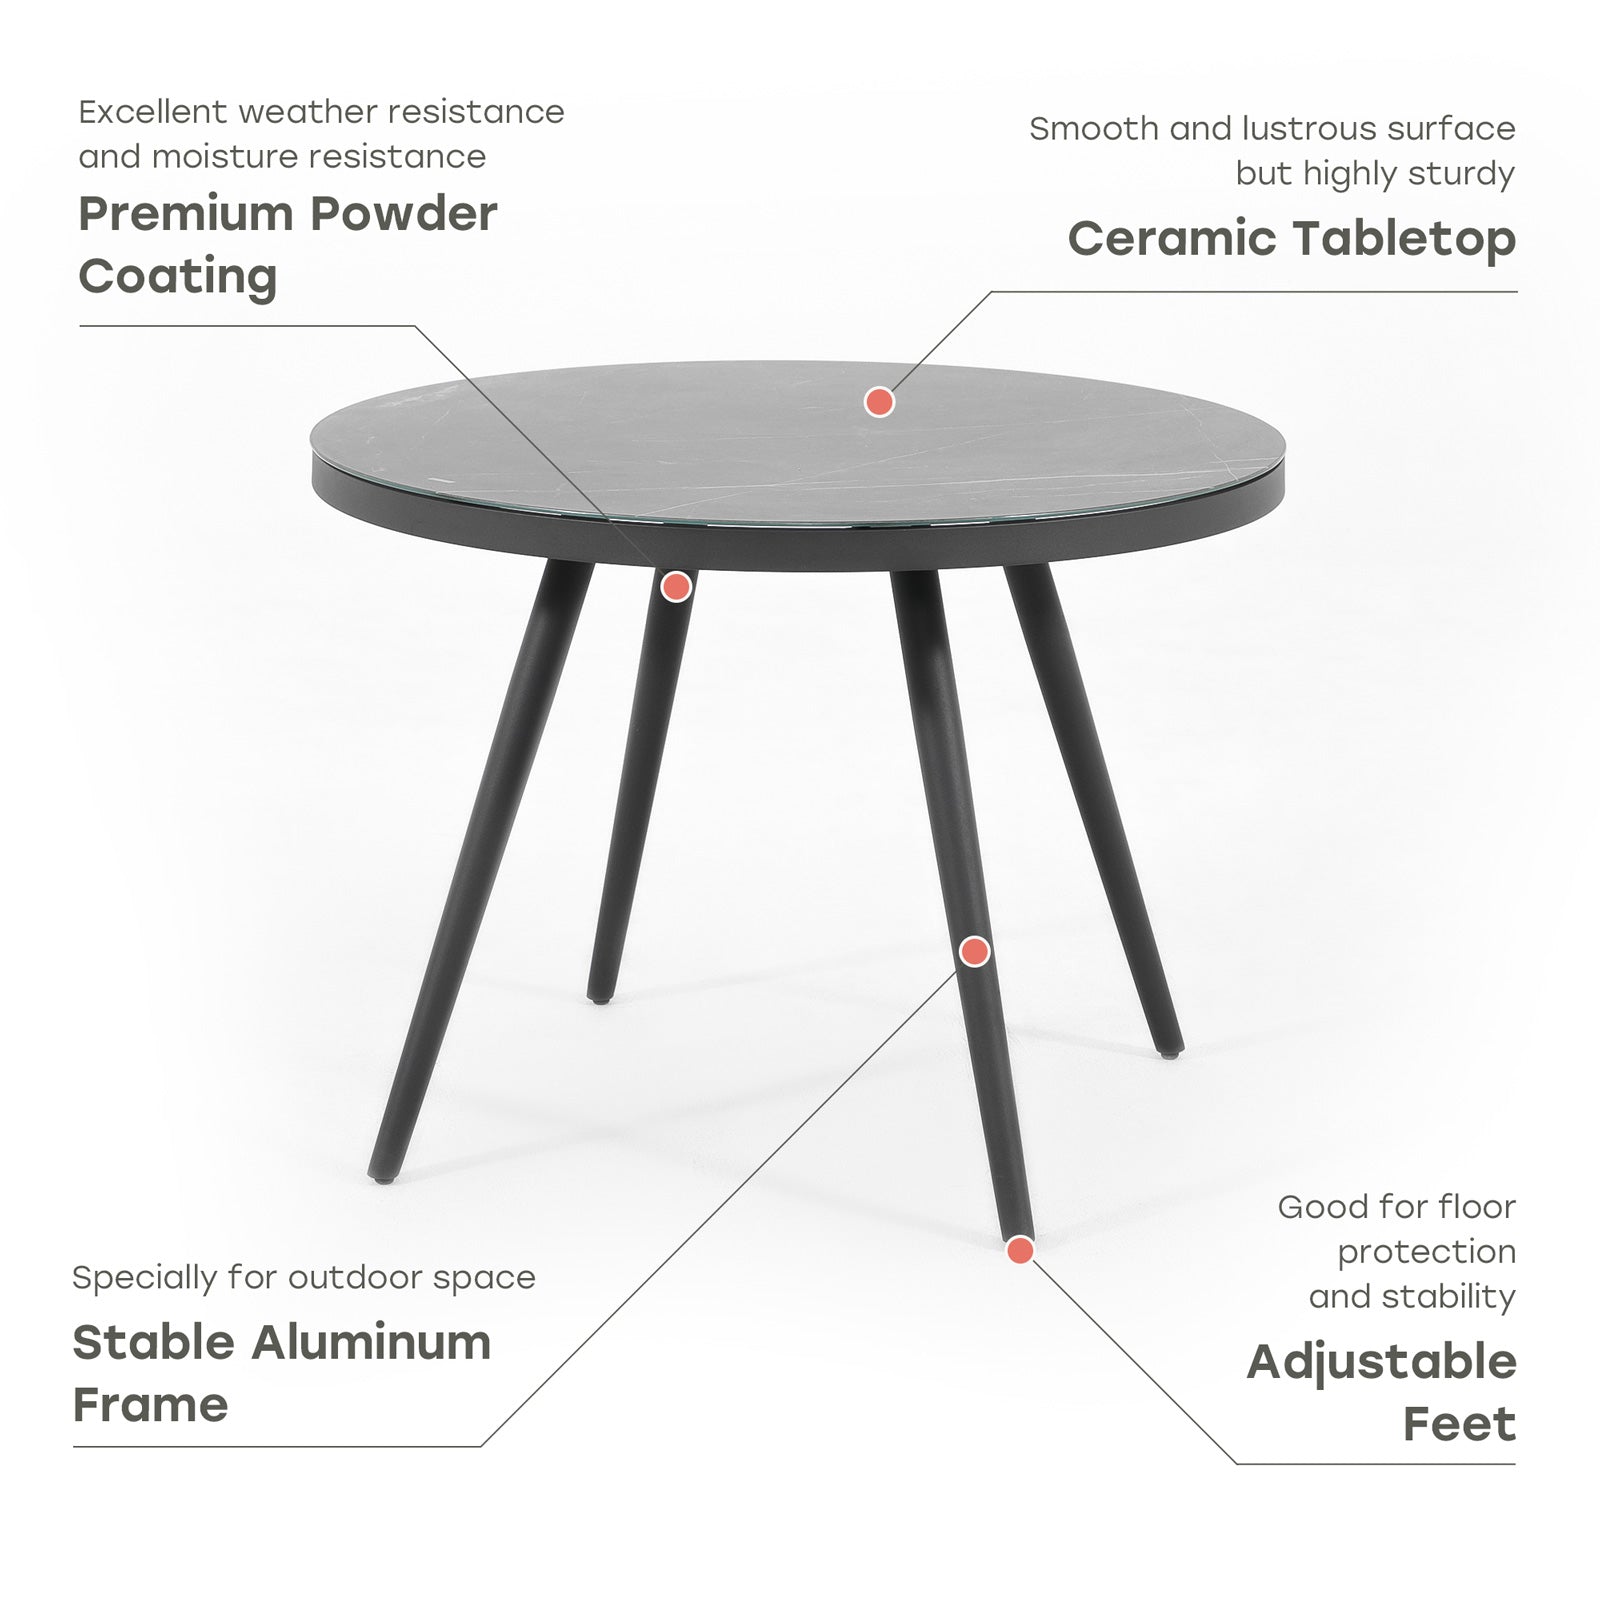 Salina grey aluminum outdoor dining table, product info - Jardina Furniture